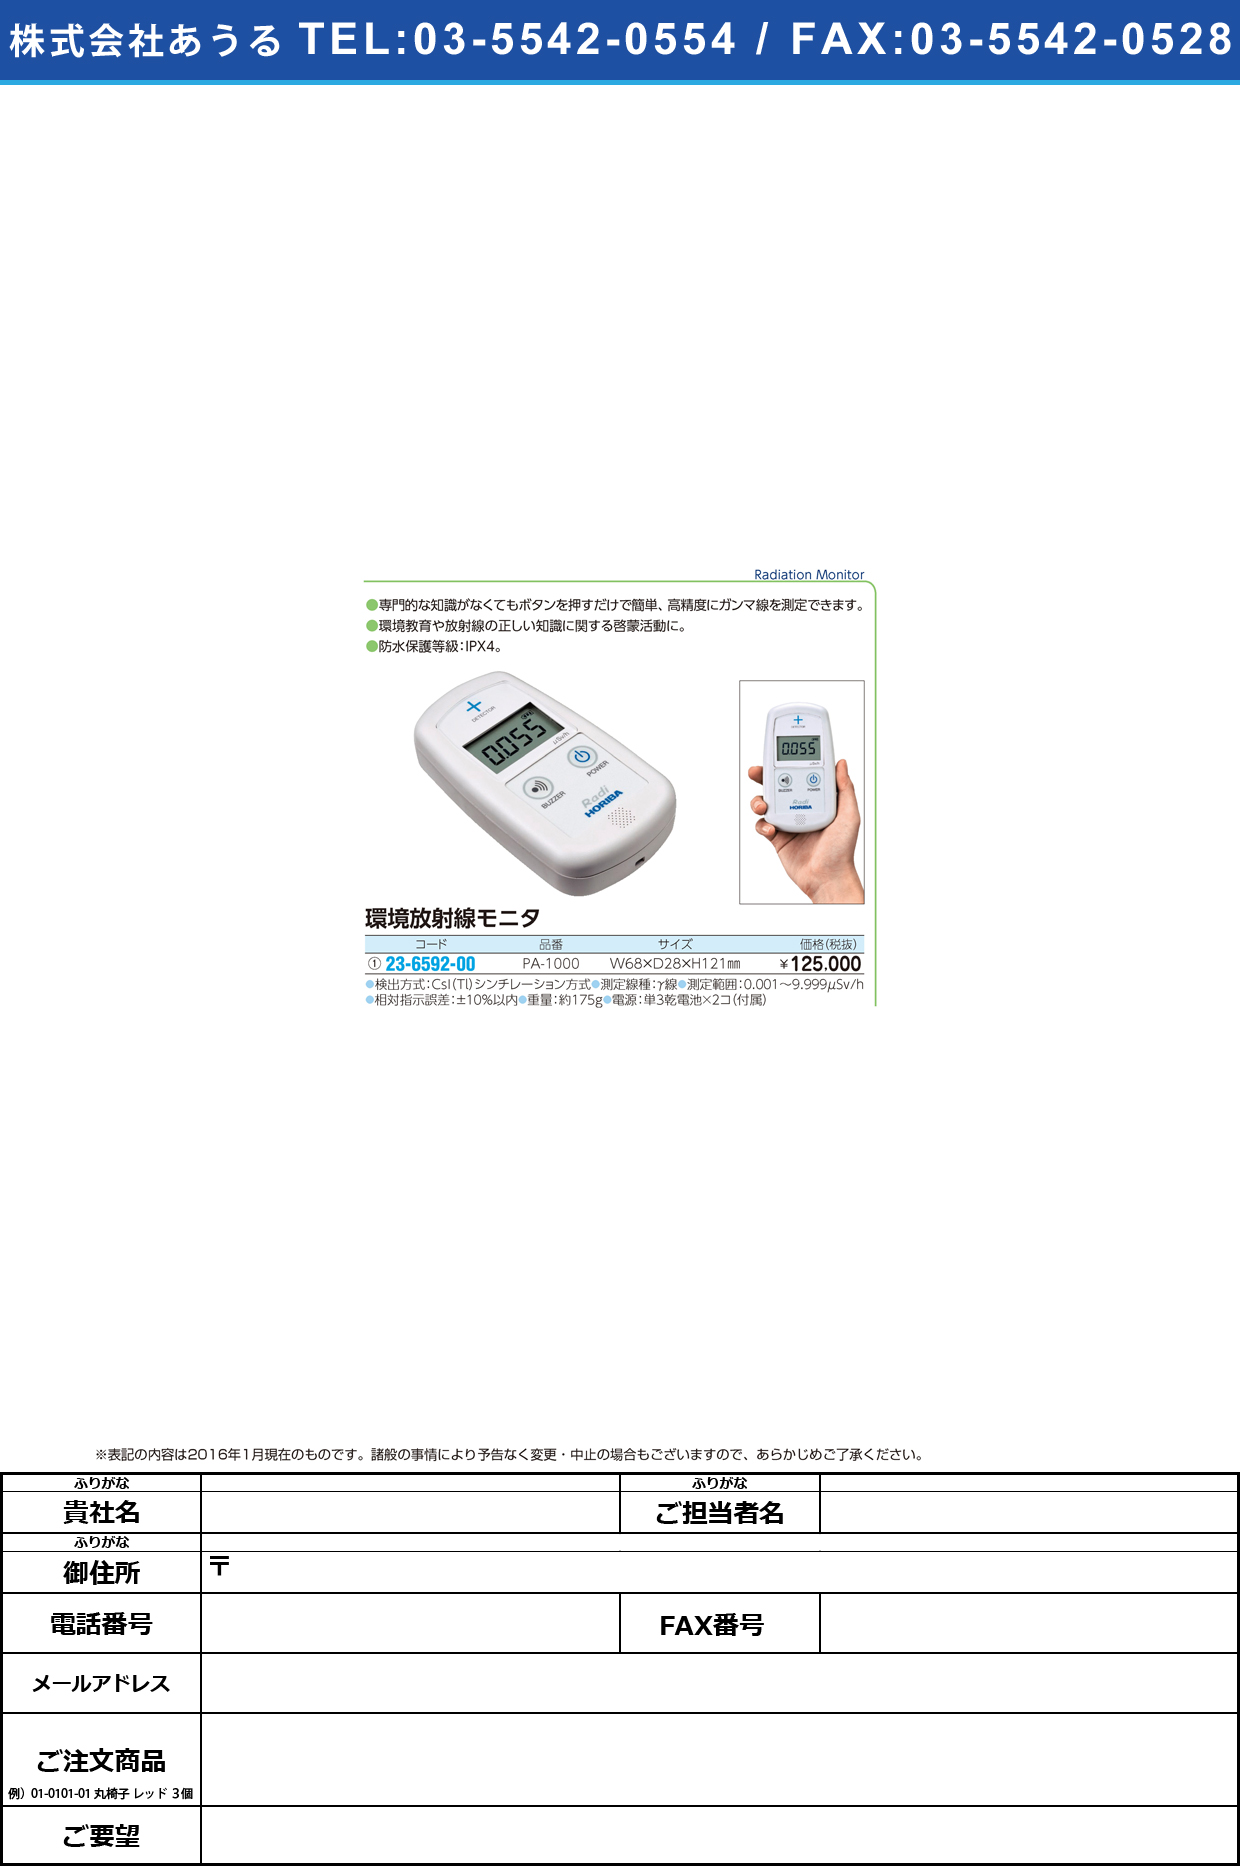 (23-6592-00)放射線モニター Ｒａｄｉ ﾎｳｼｬｾﾝﾓﾆﾀ- PA-1000【1台単位】【2016年カタログ商品】